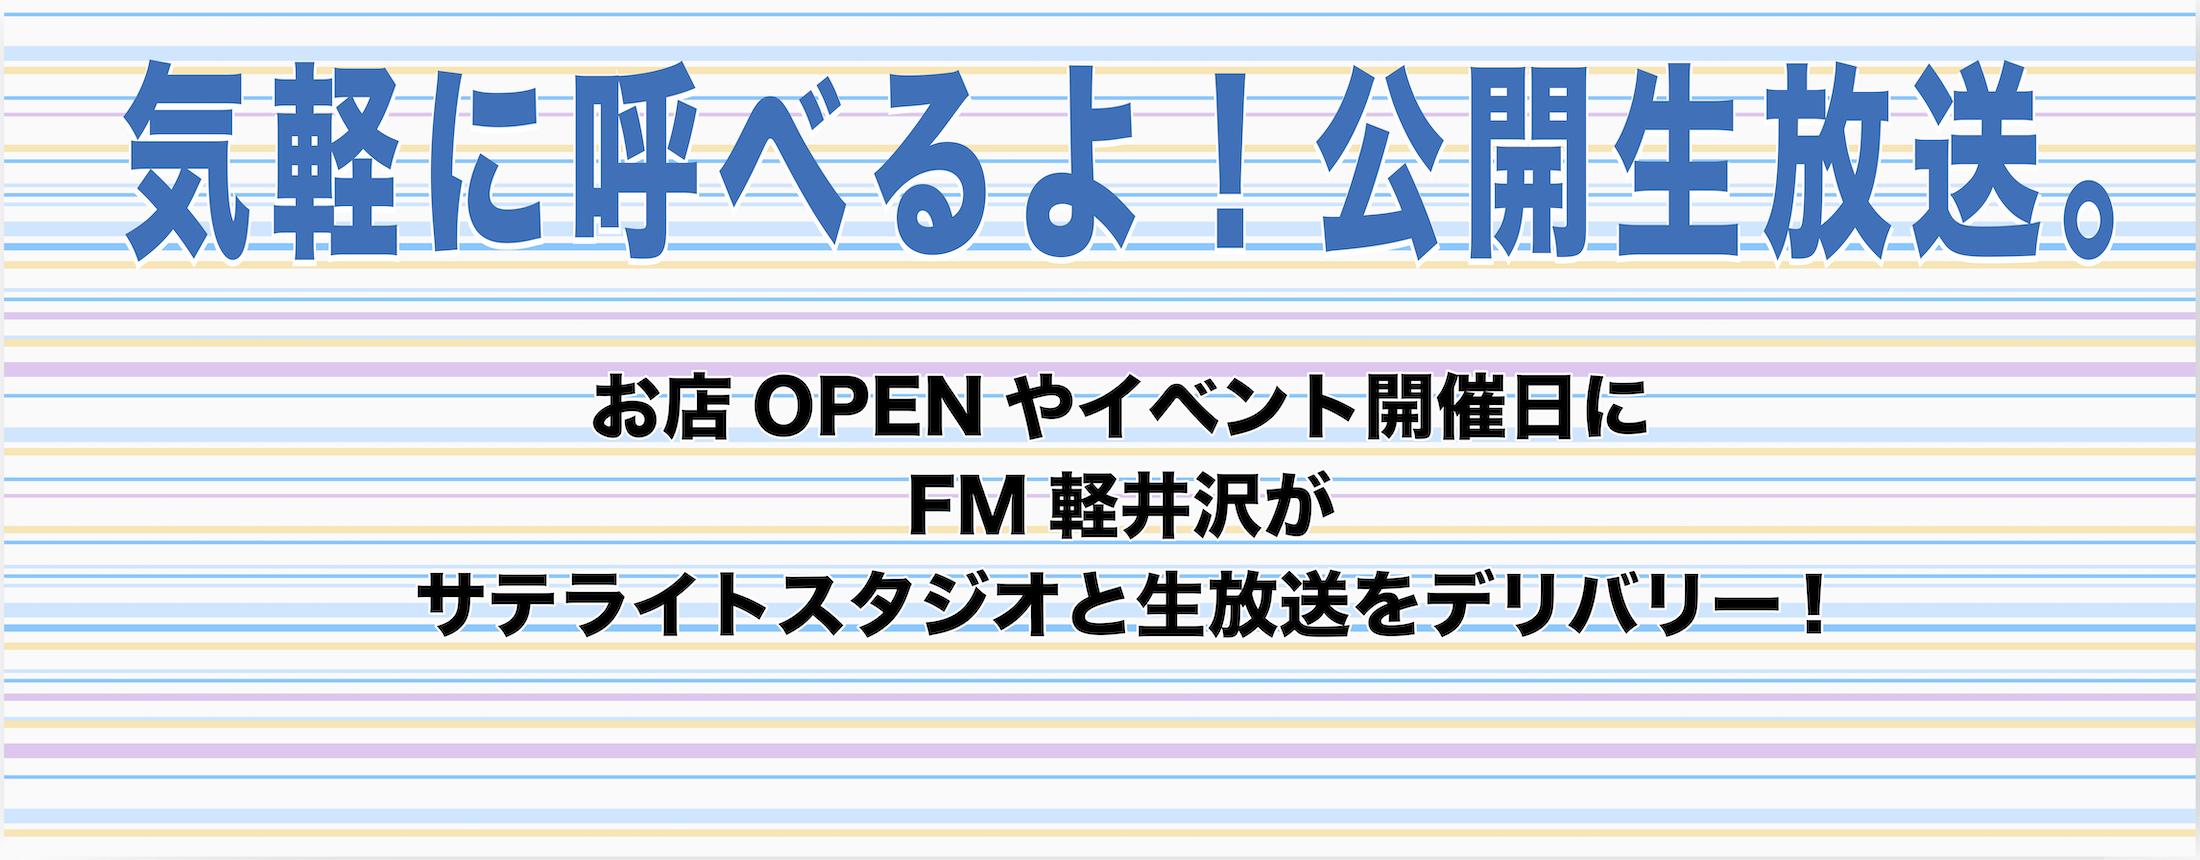 軽井沢 fm